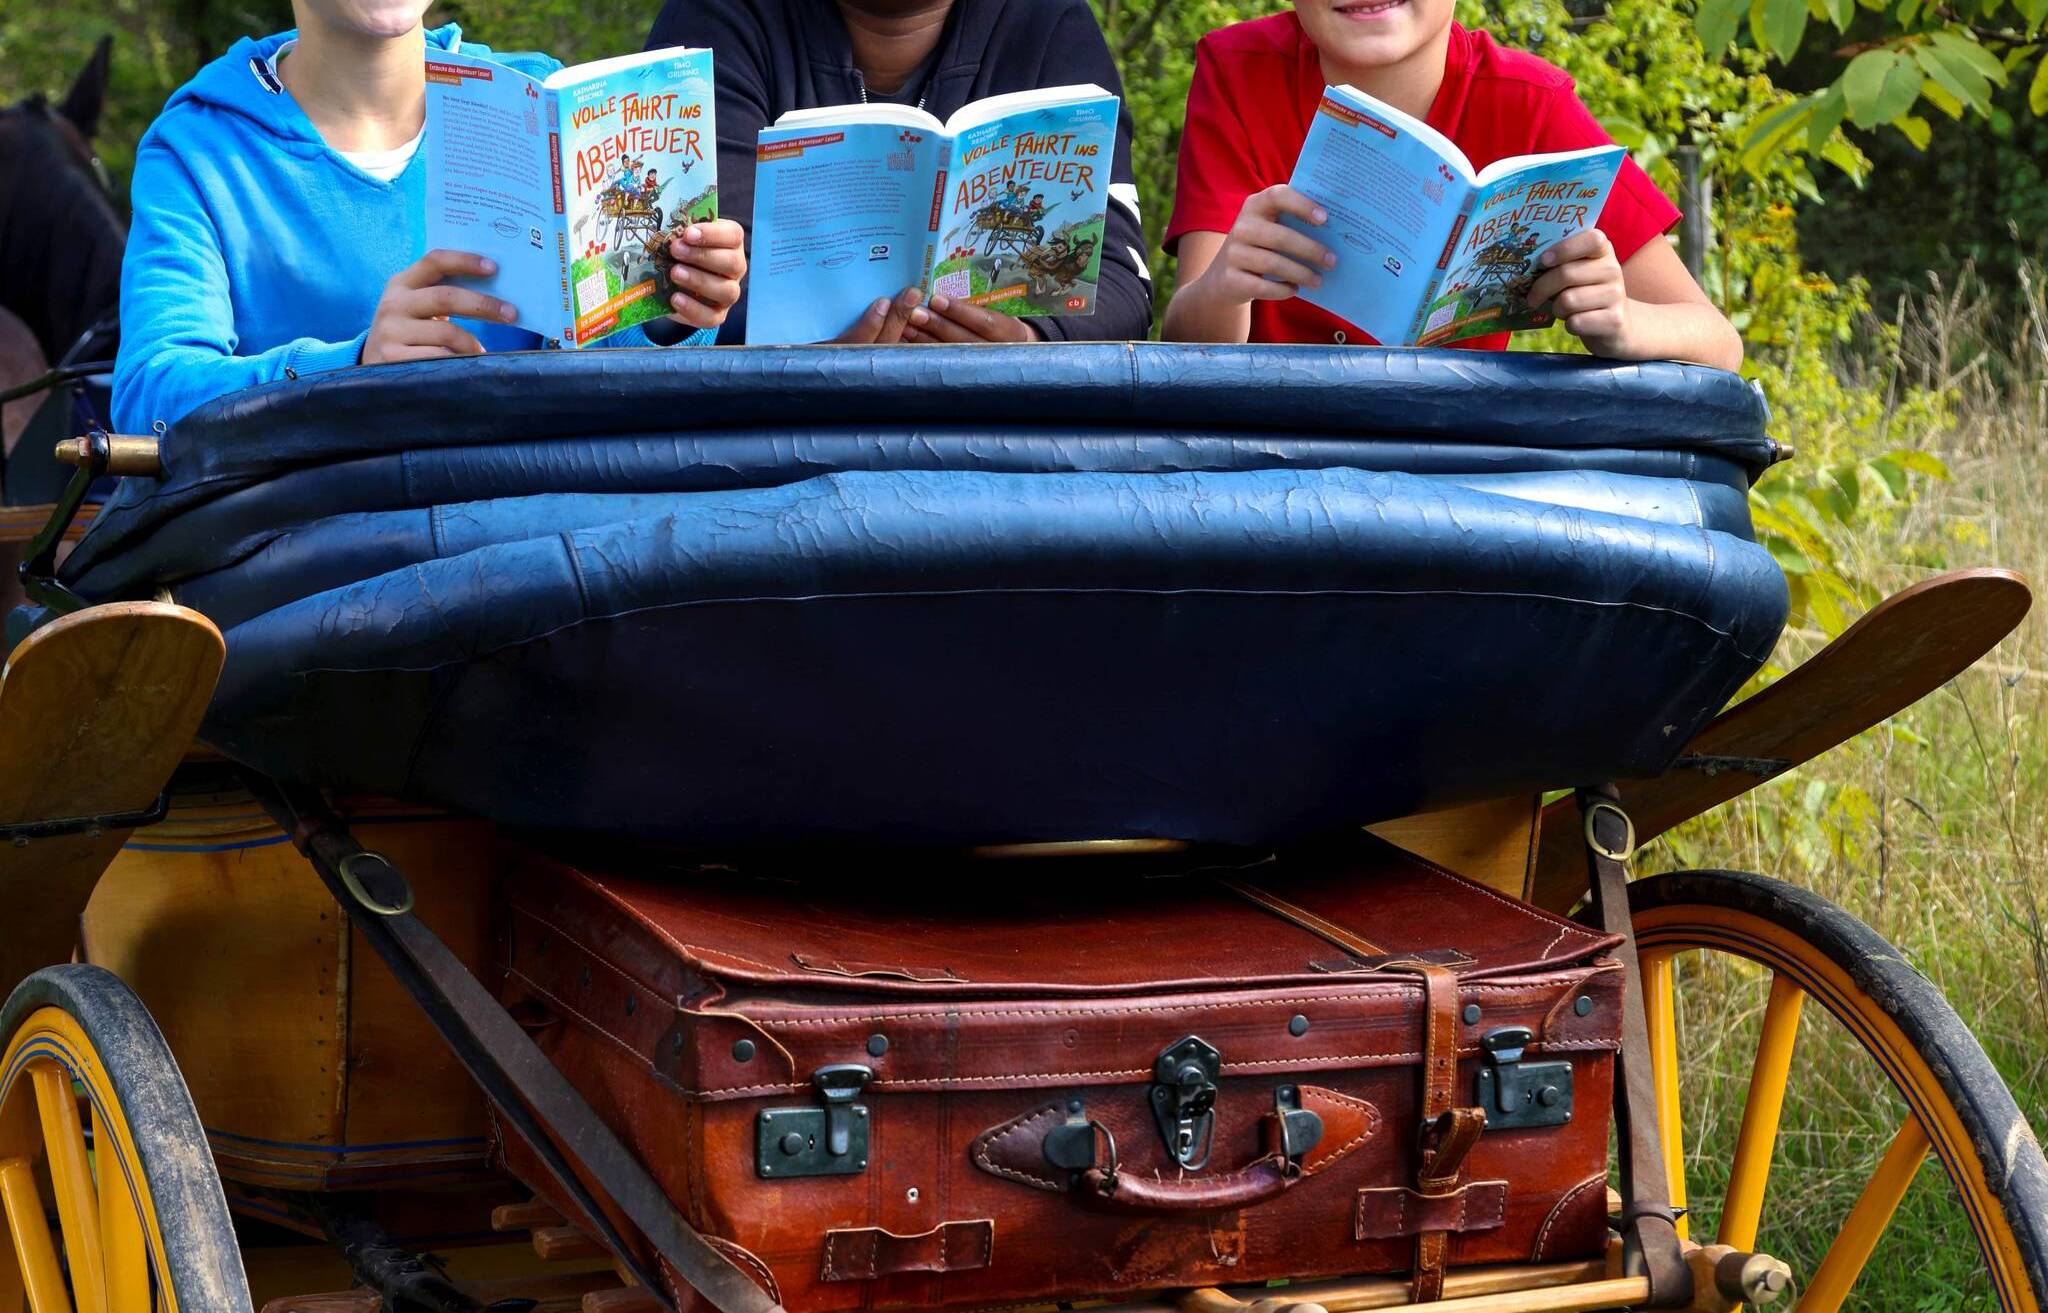  Volle Fahrt ins Leseabenteuer: Am Welttag des Buches sollen Kinder fürs Lesen begeistert werden. 